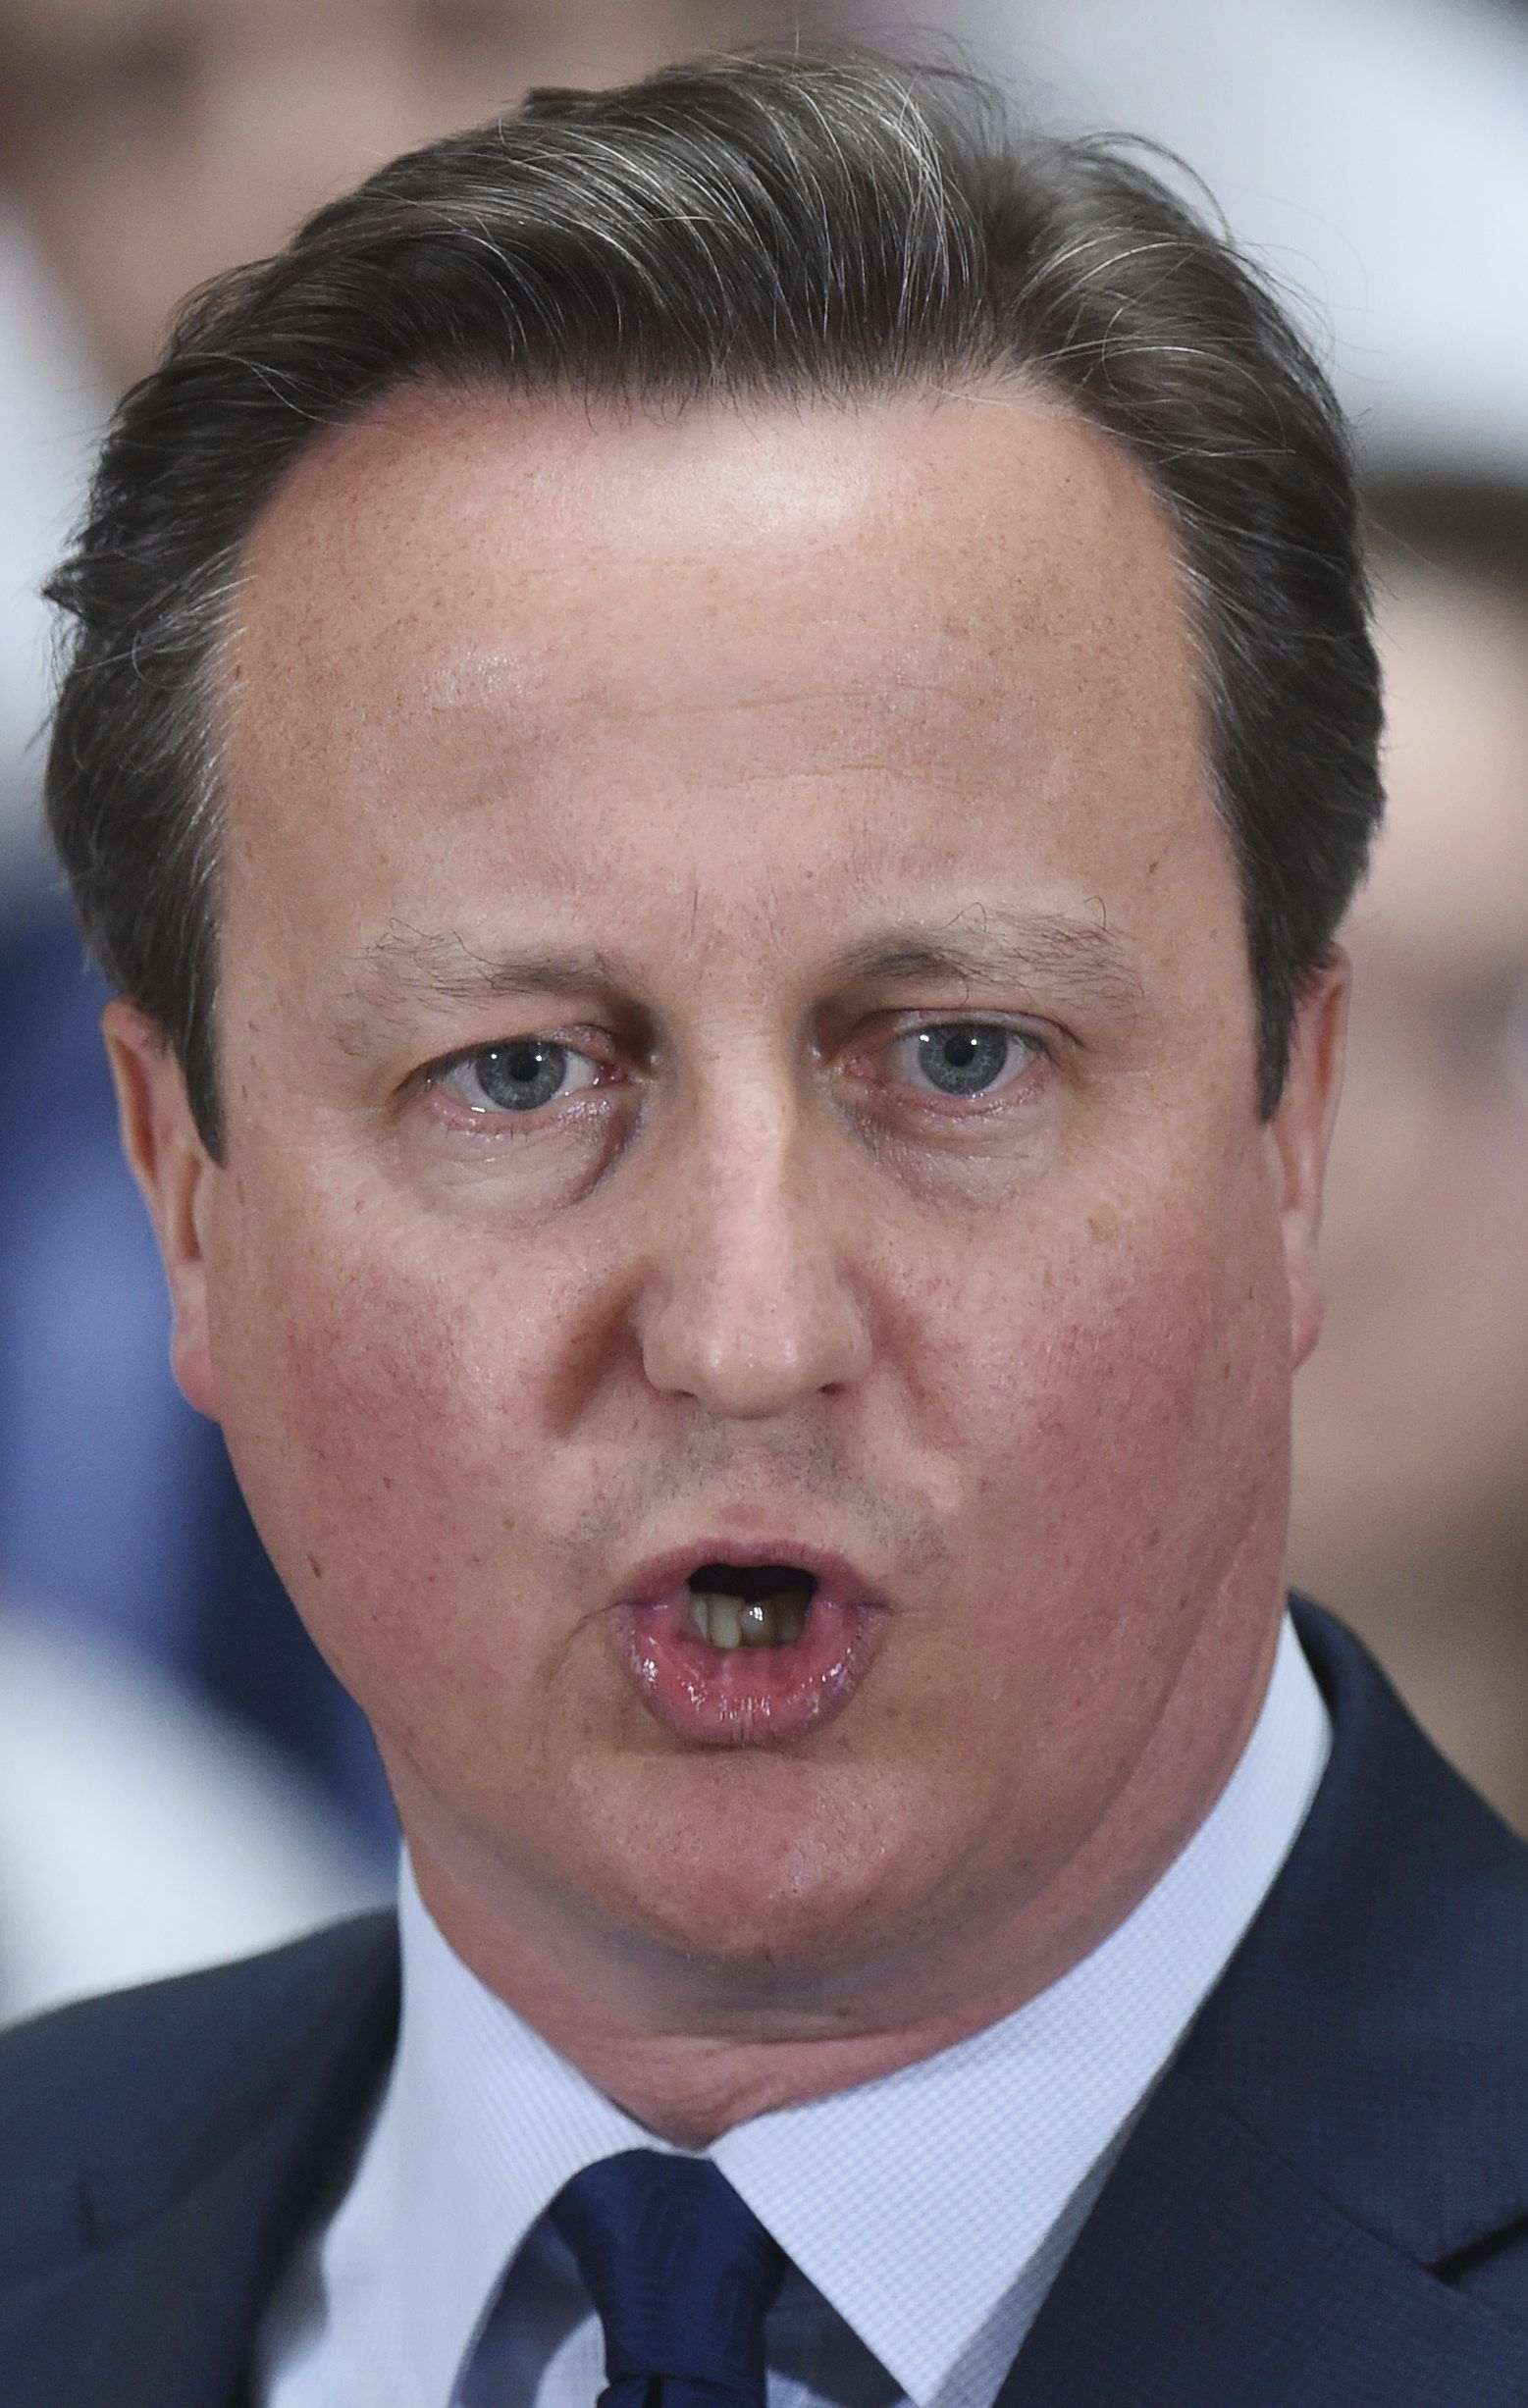 Cameron afirma que Nigeria y Afganistan son los "más corruptos del mundo"